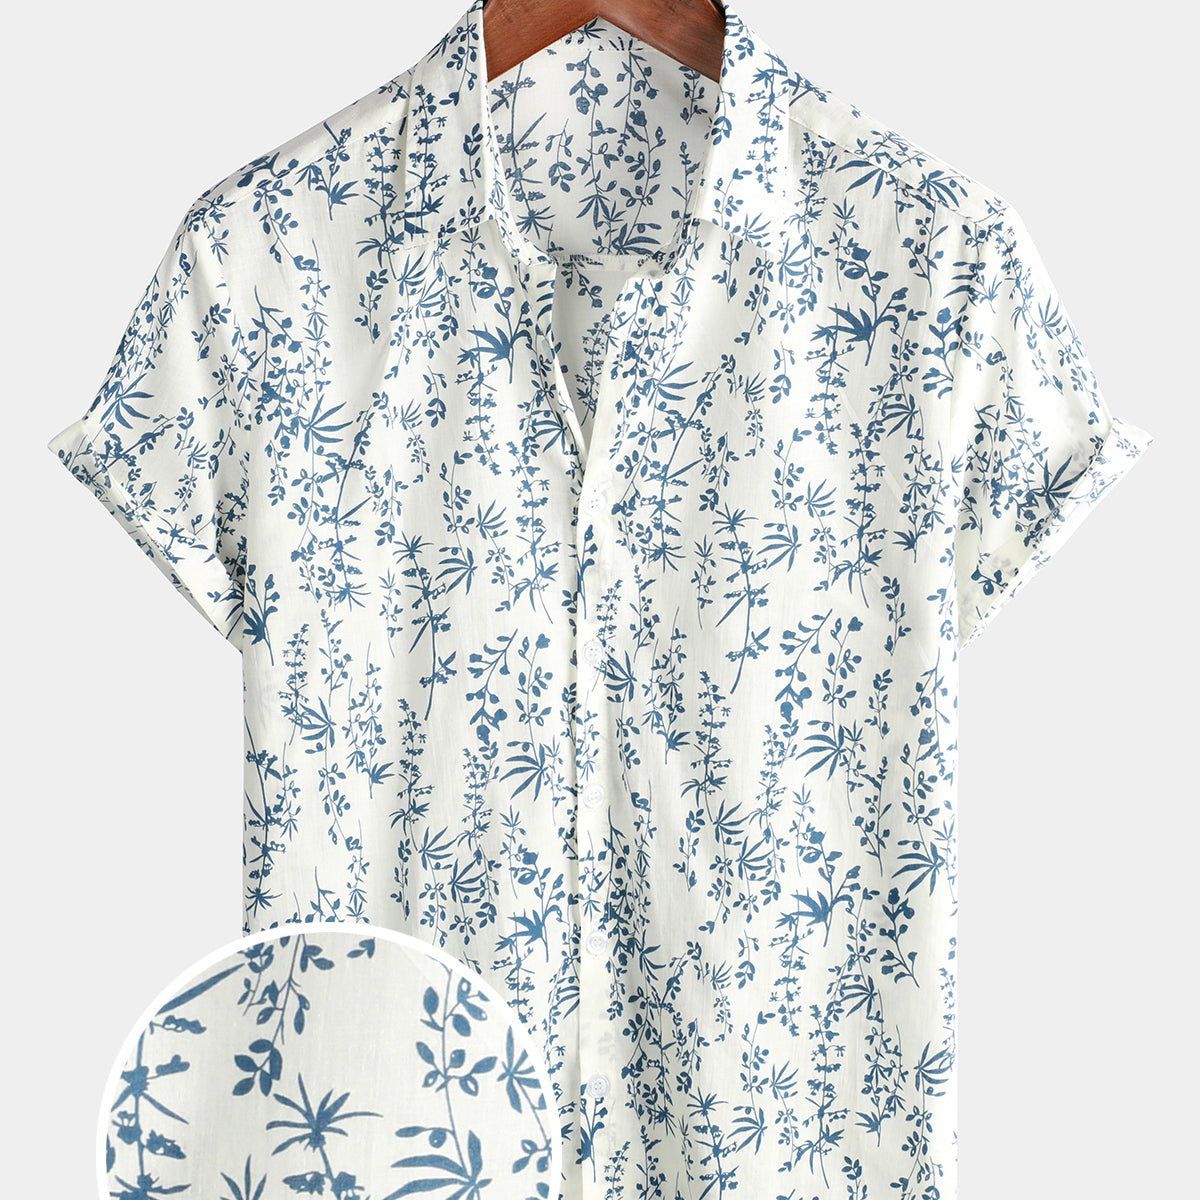 Men's Cotton Floral Button Up Summer Short Sleeve Shirt